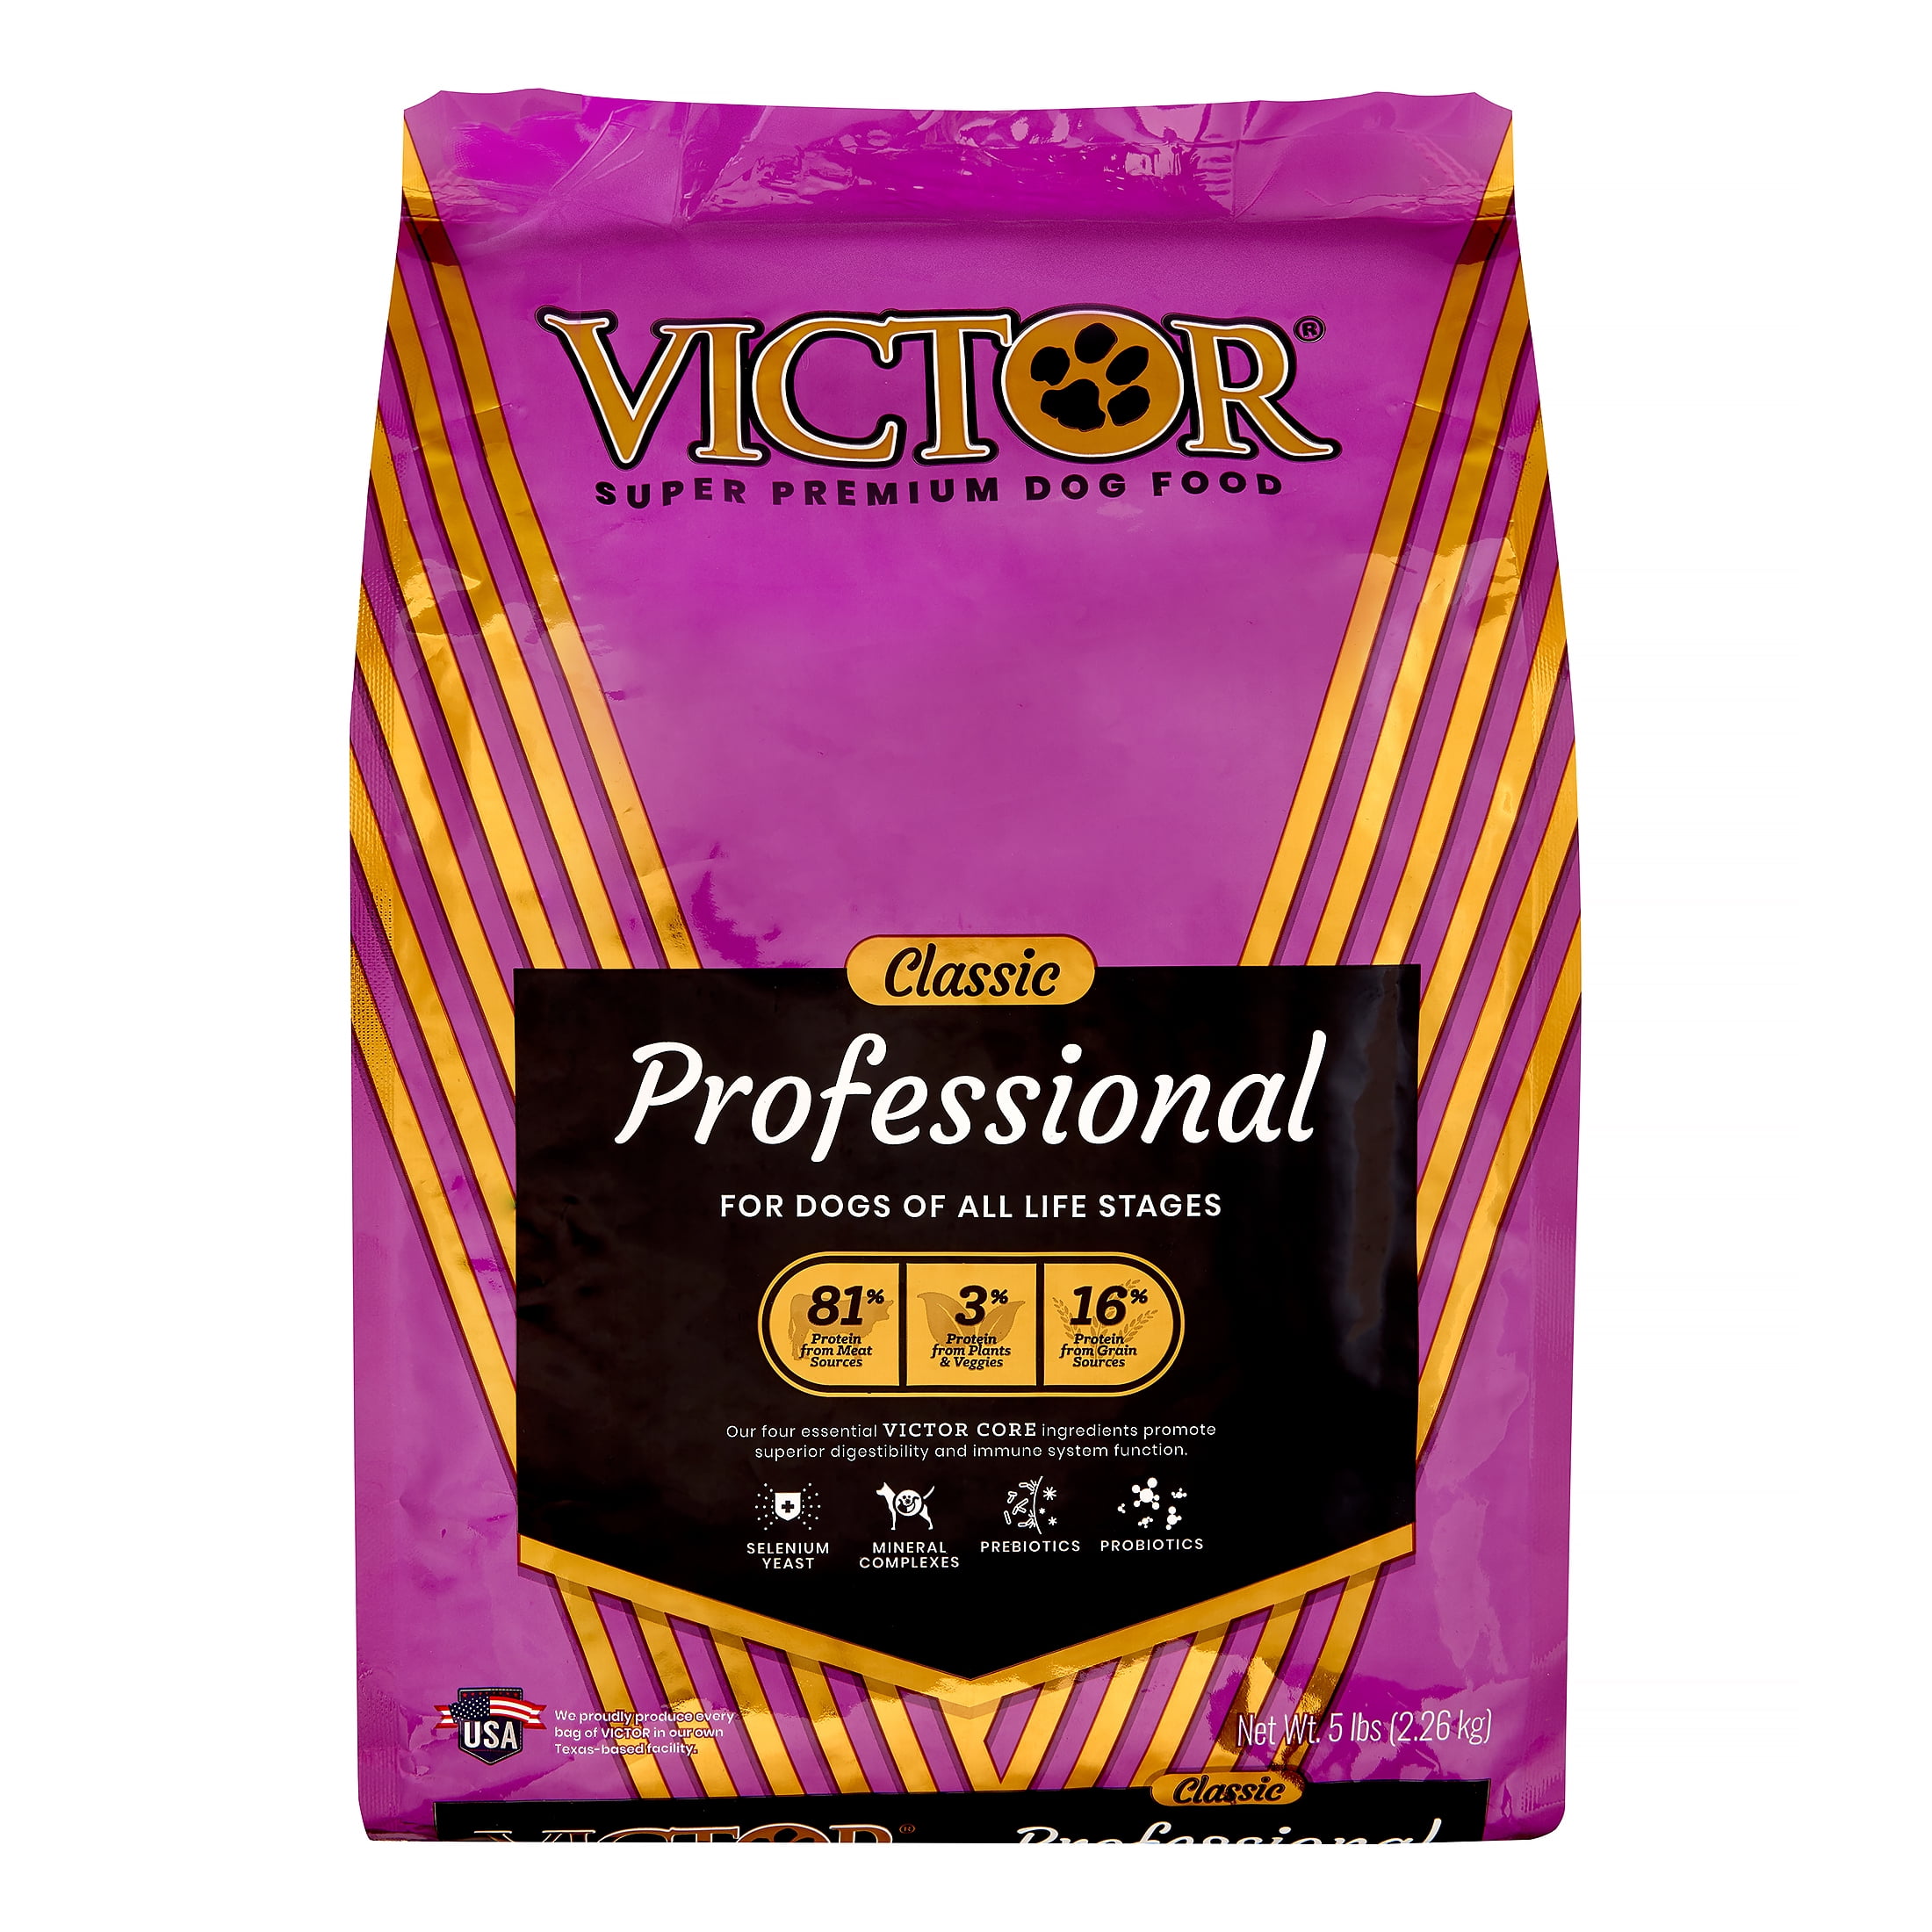 who makes victor dog food